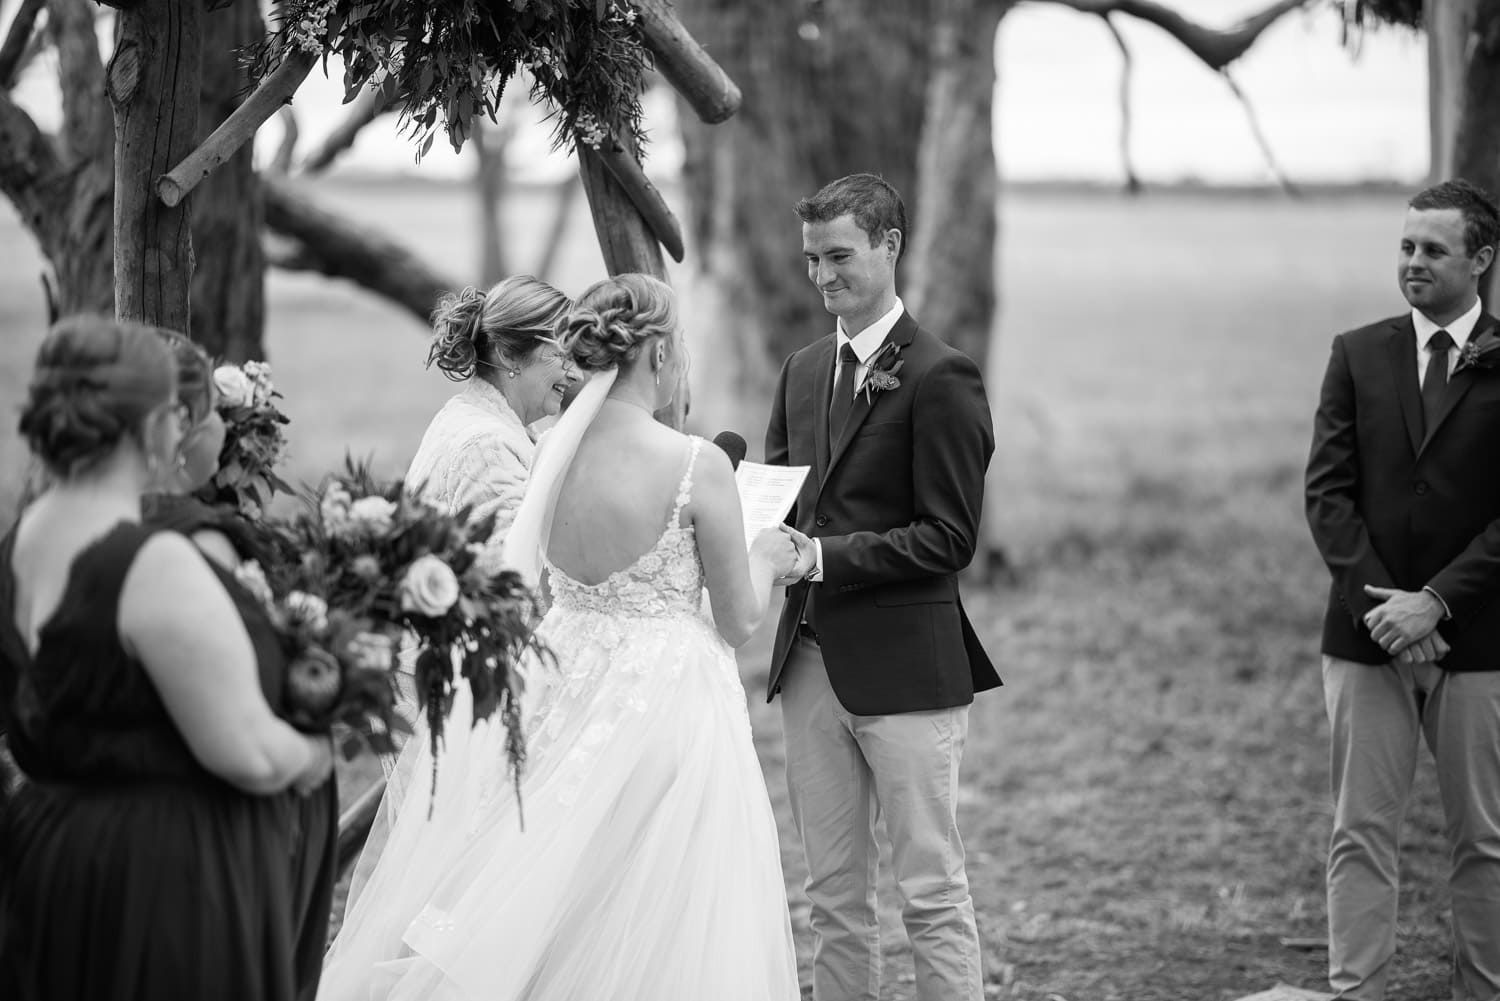 Brucknell wedding vows